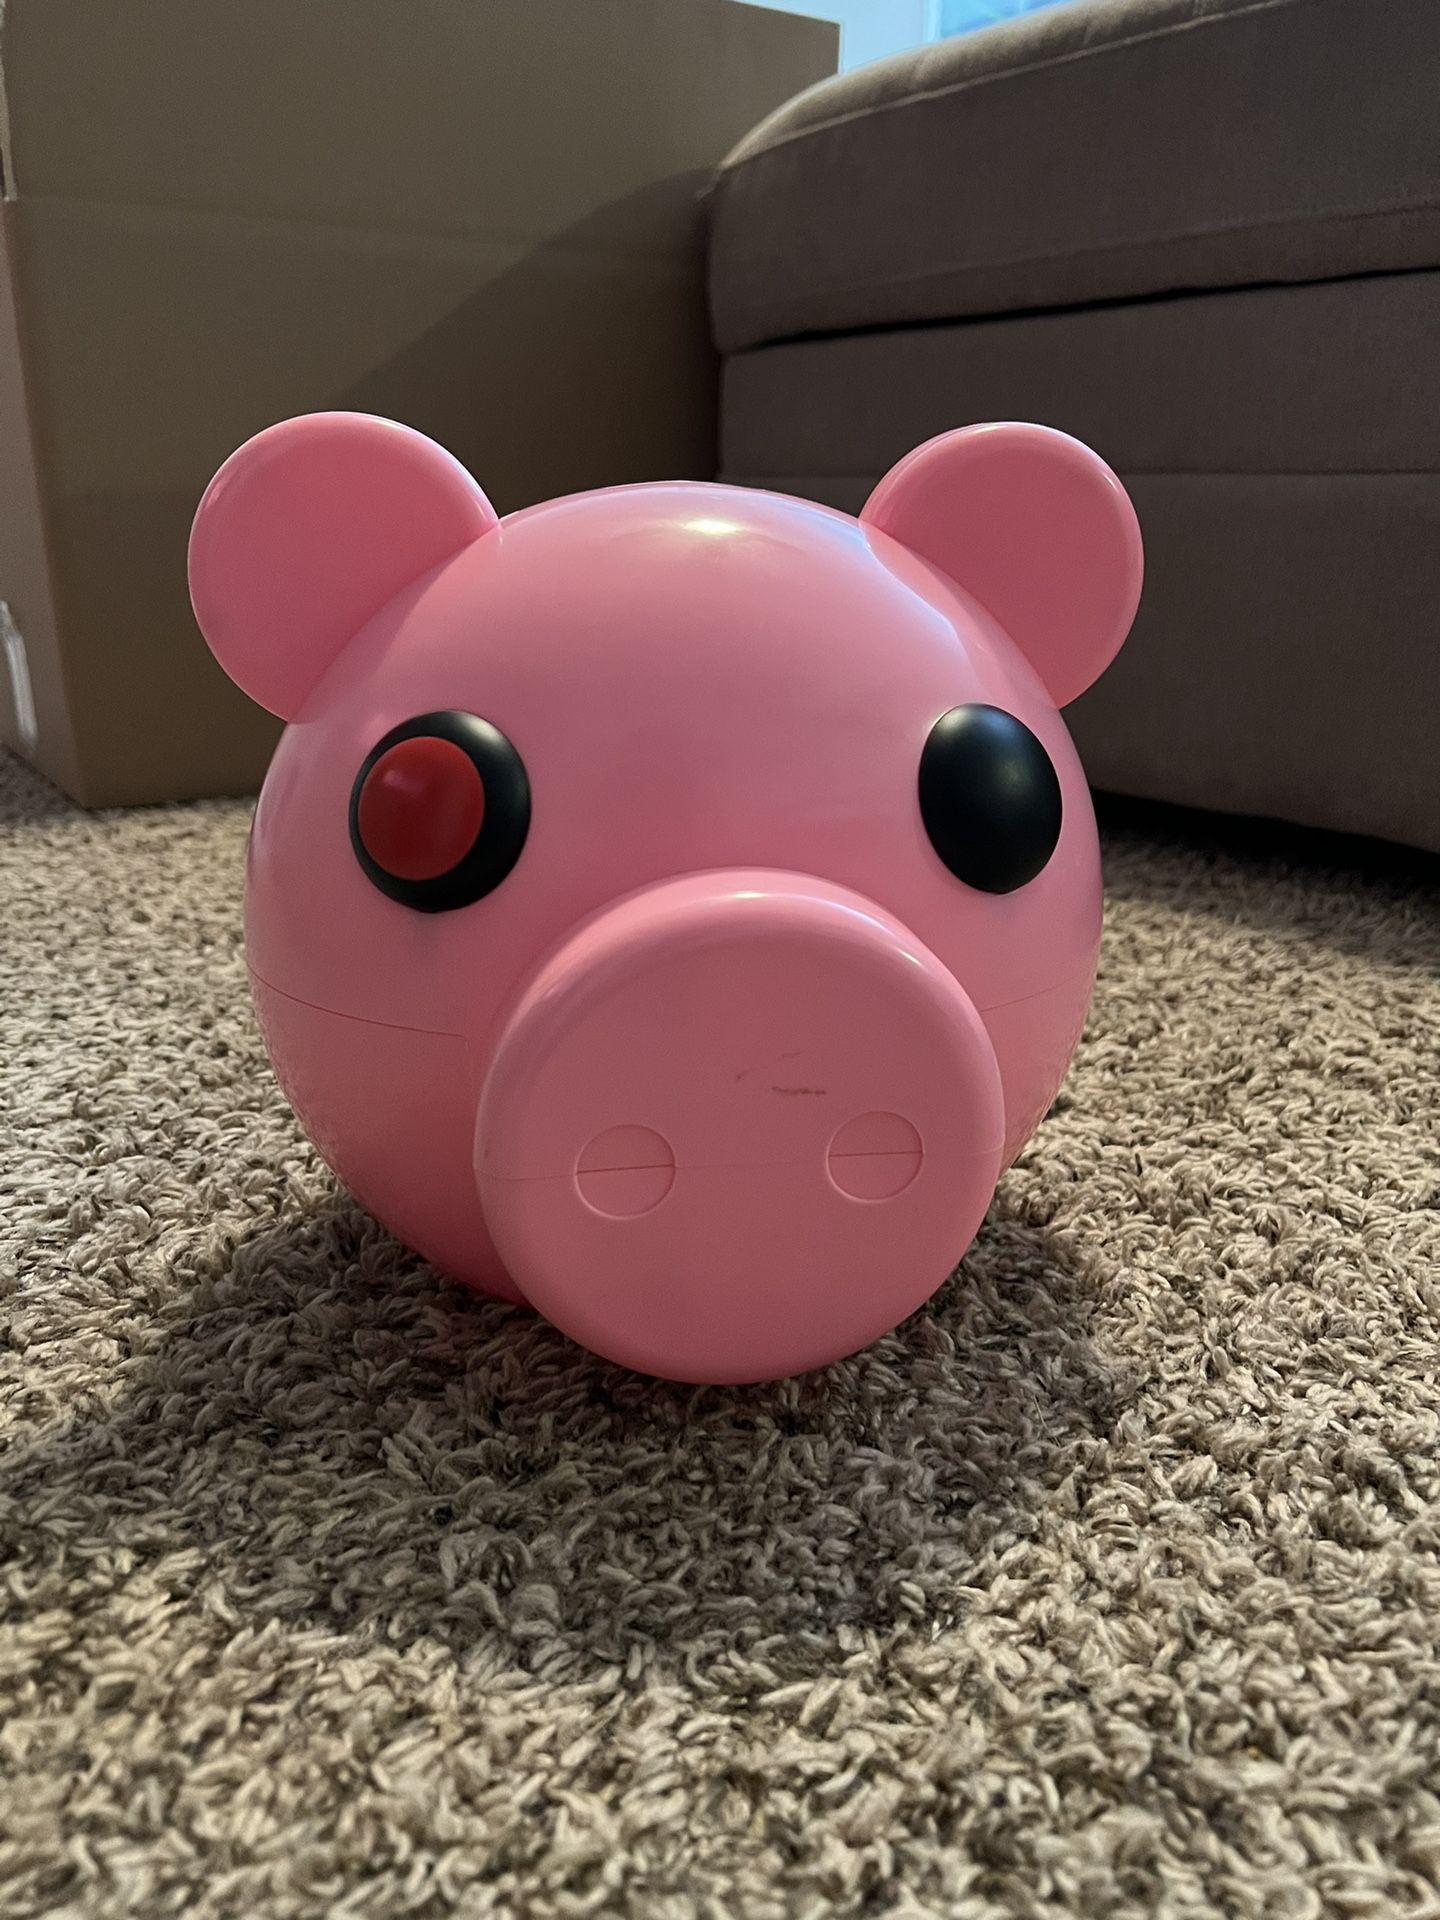 Piggy piggy bank 